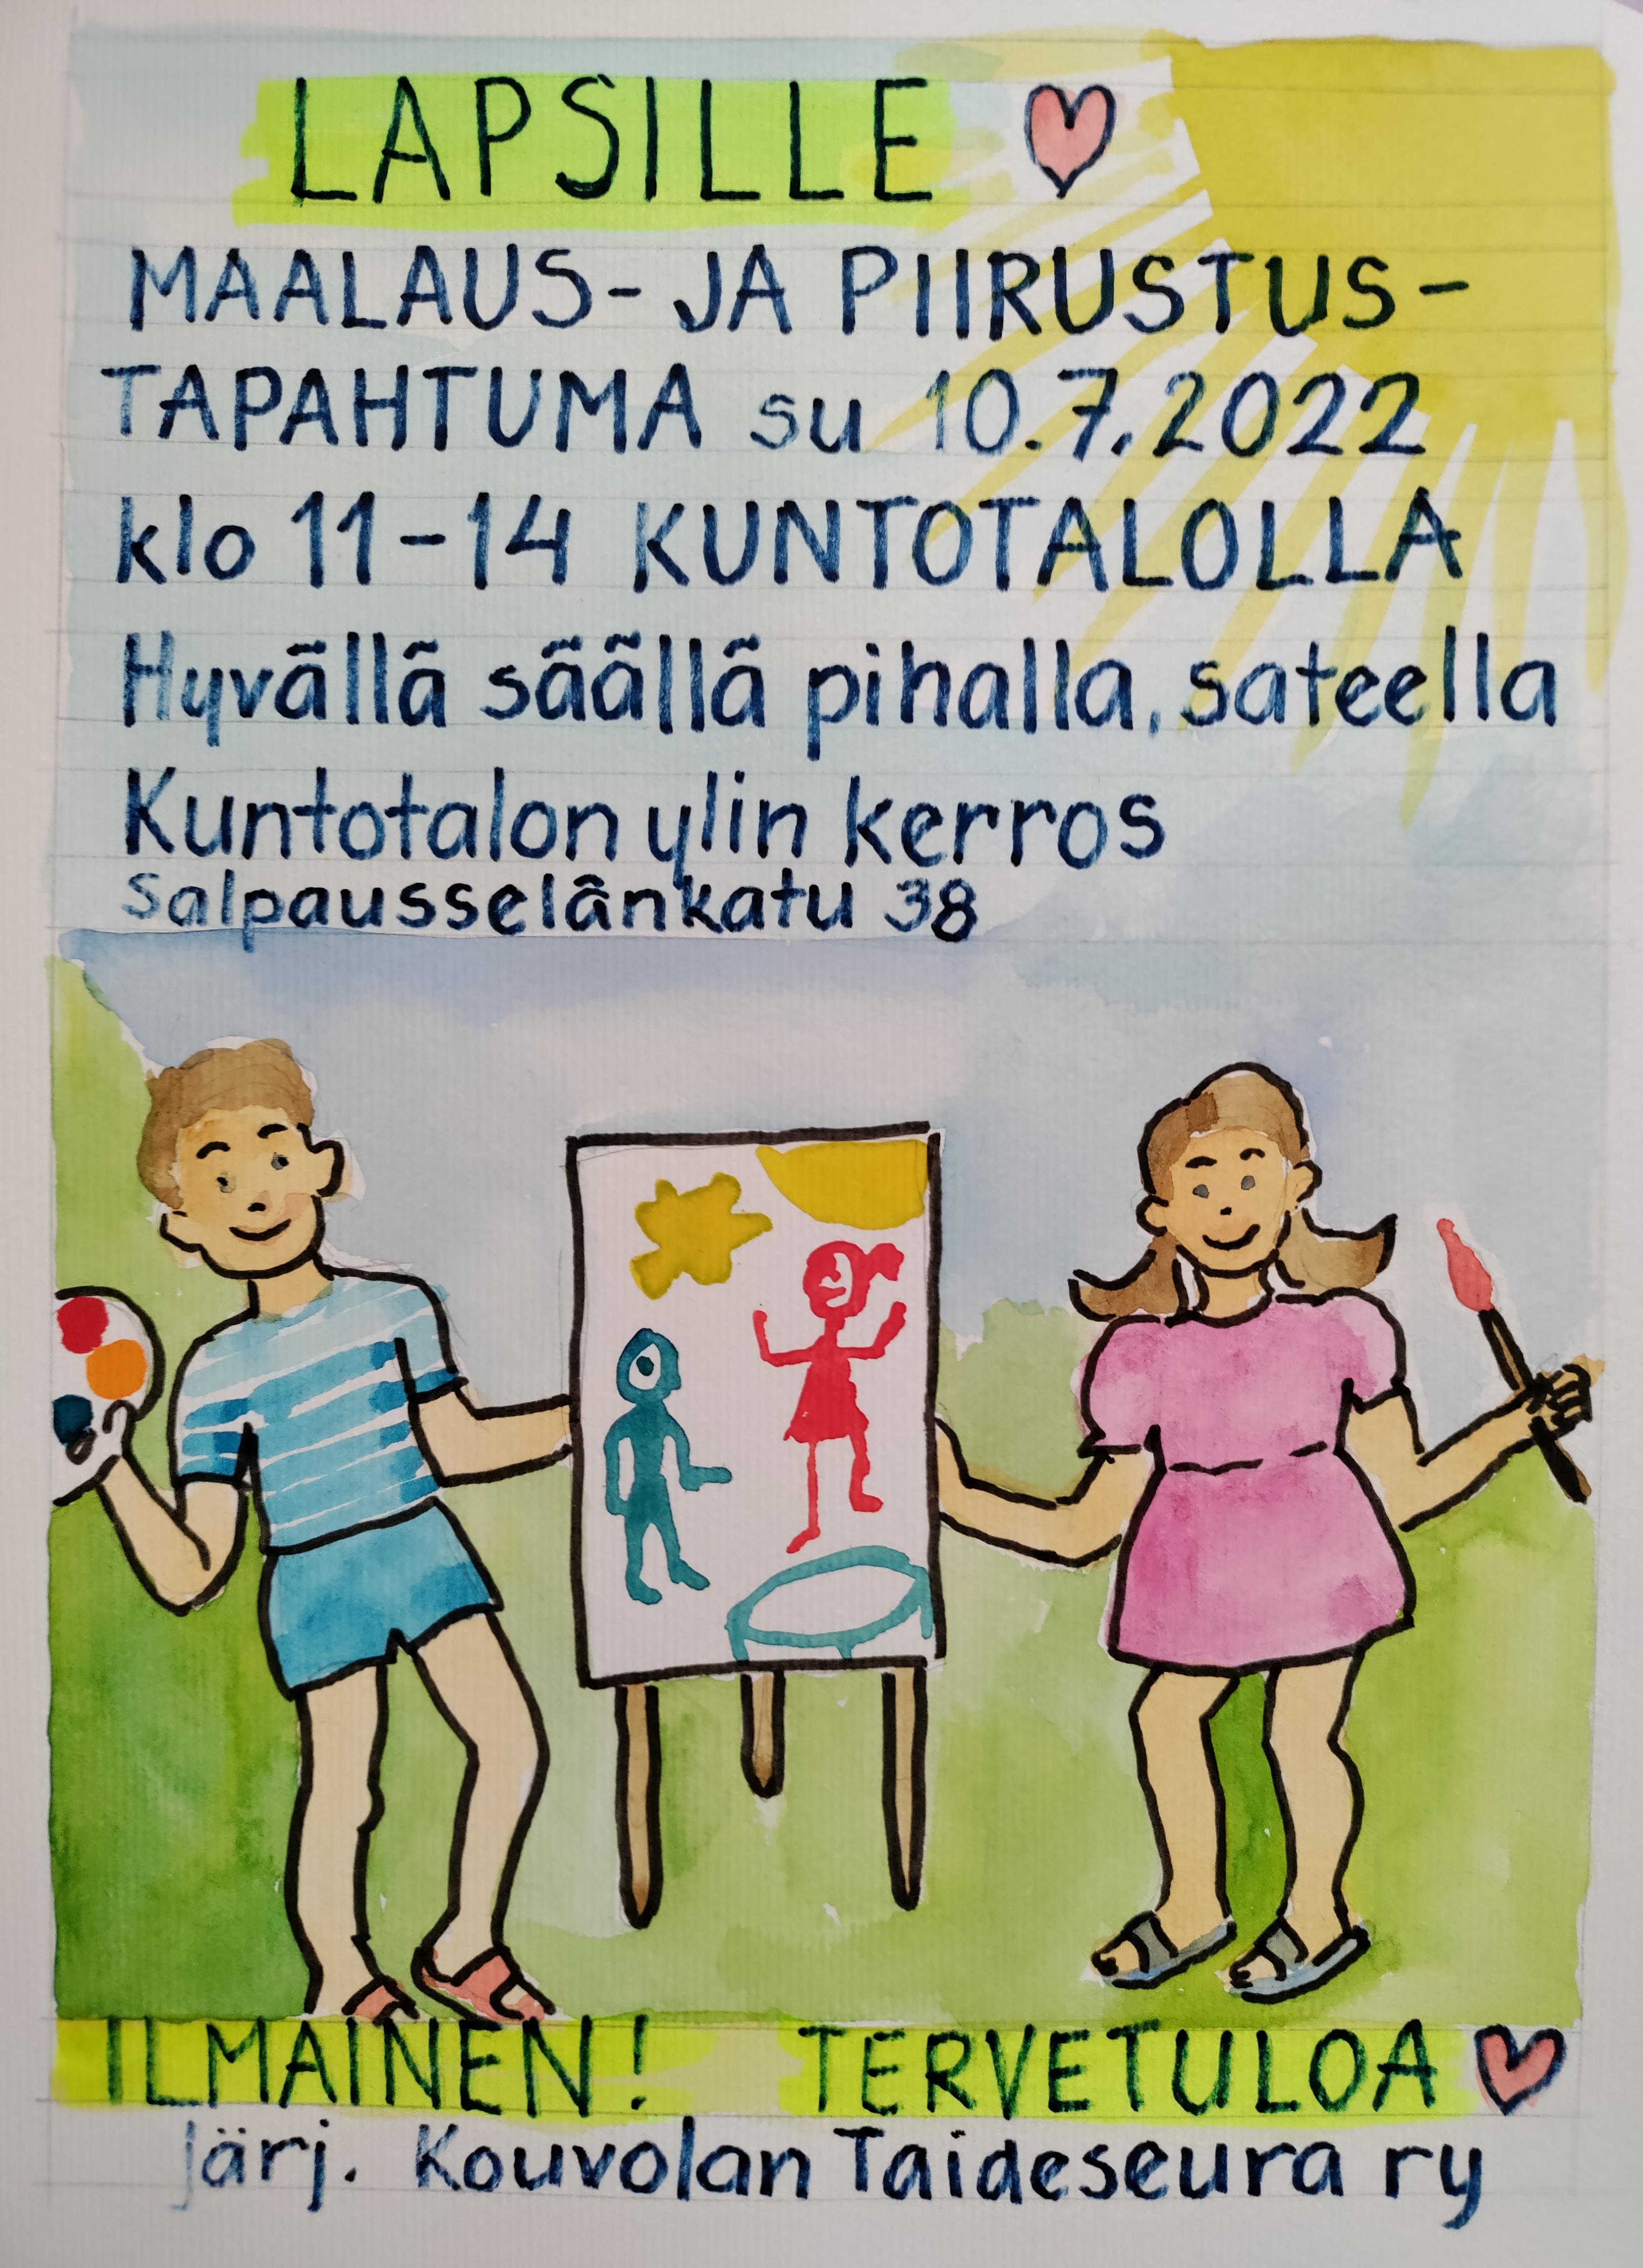 maalaus- ja piirrustustapahtuma lapsille